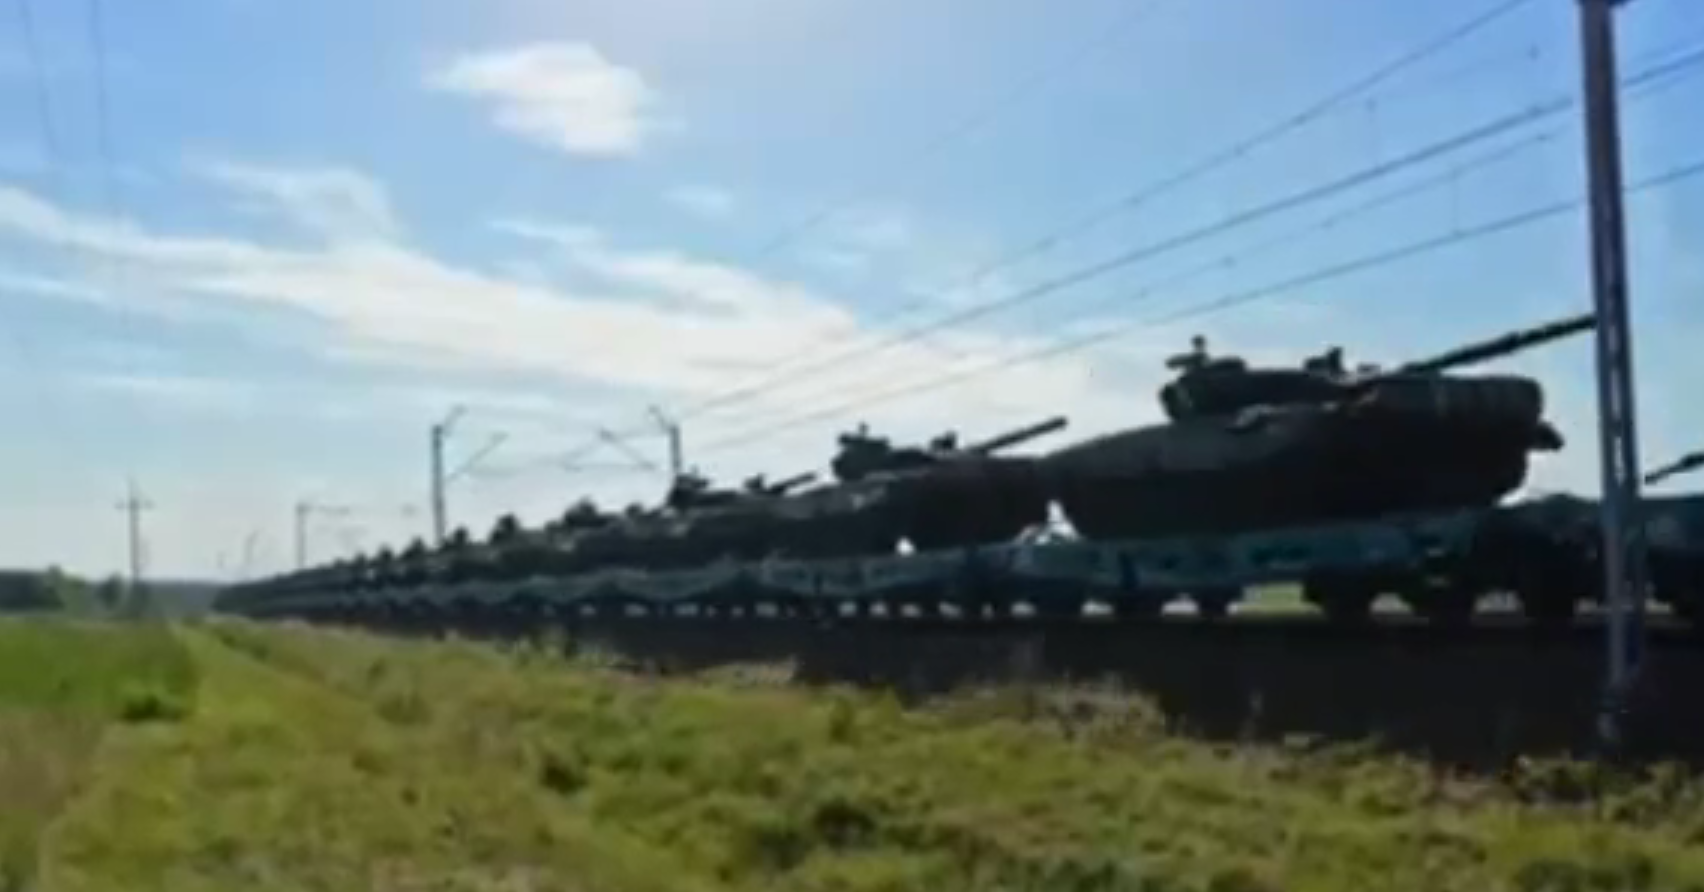 W Polsce zauważono pociąg czołgów PT-91 Twardy jadący w kierunku granicy z Ukrainą